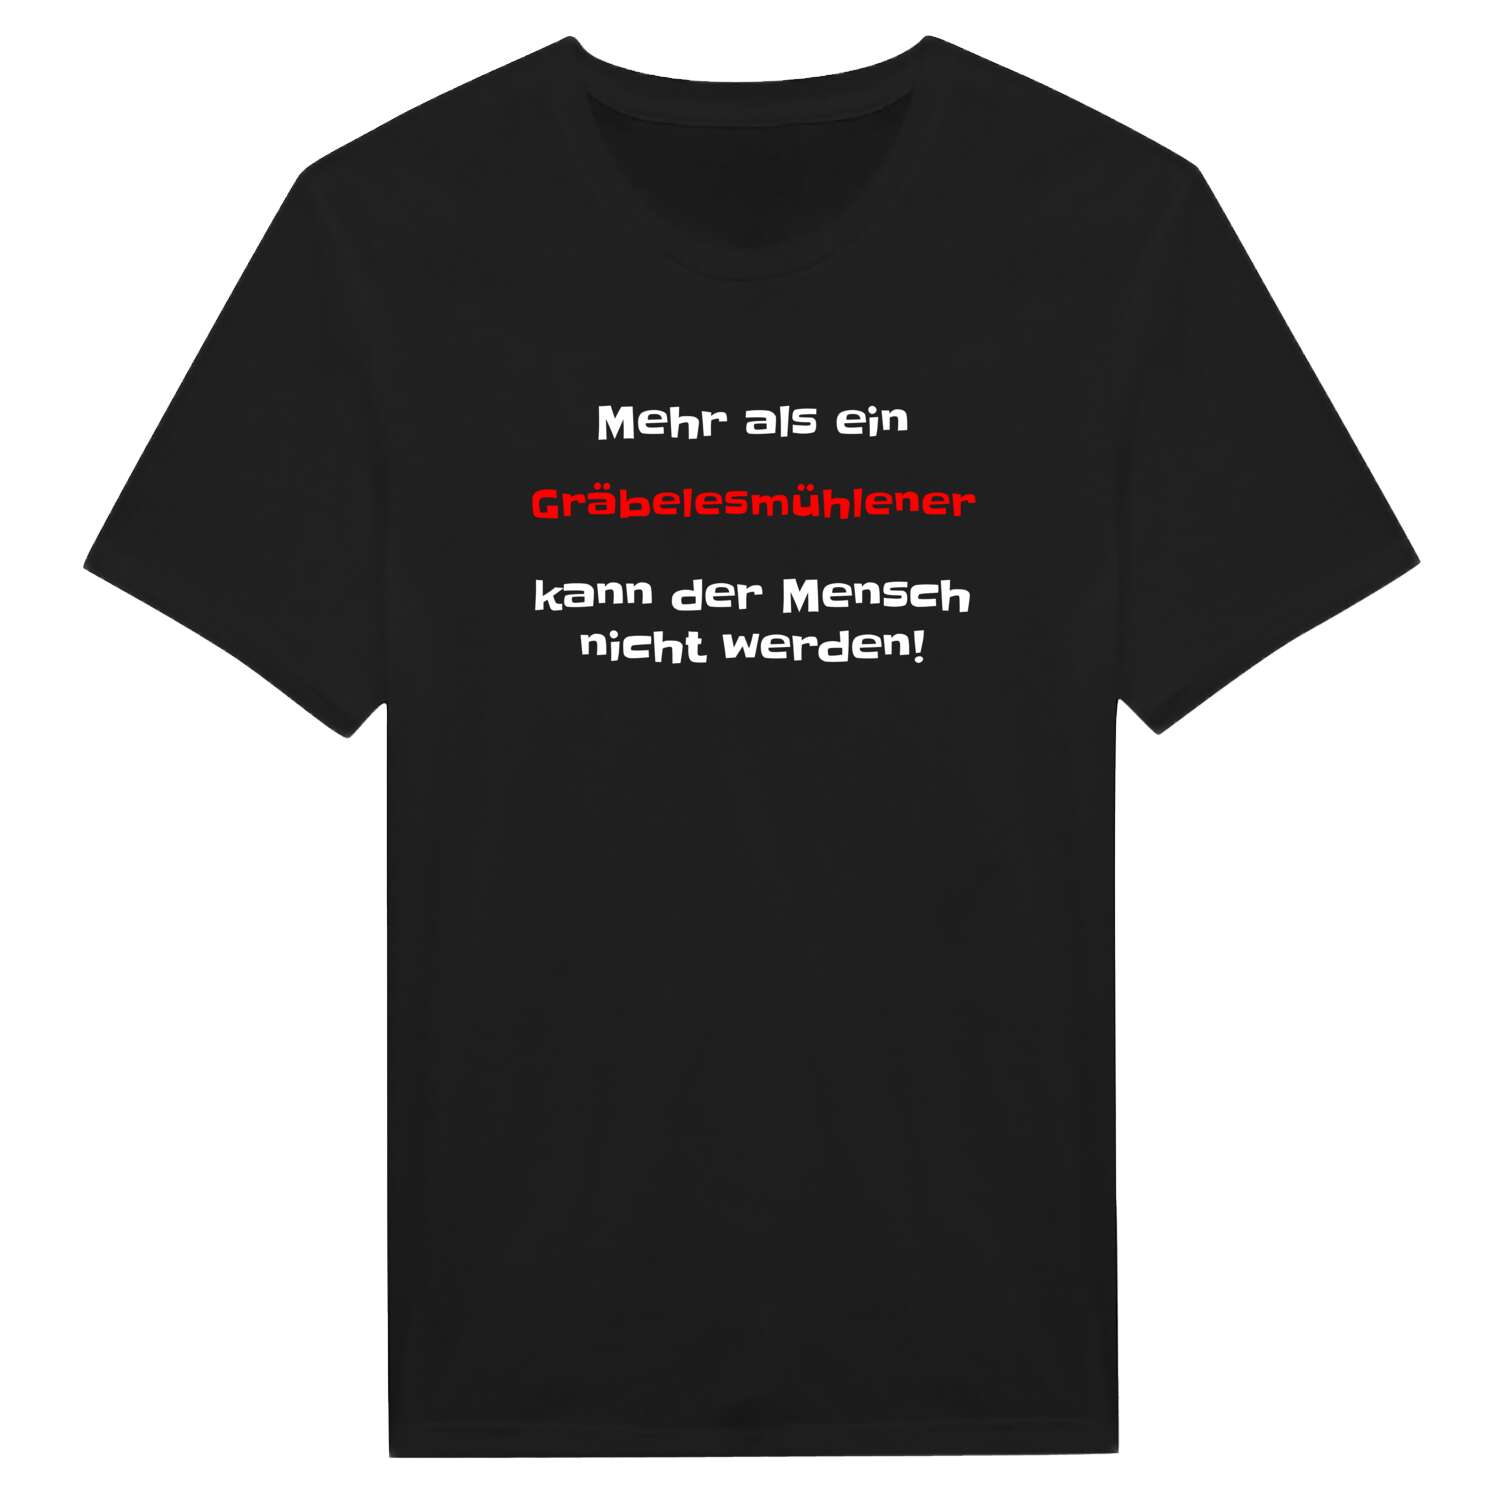 Gräbelesmühle T-Shirt »Mehr als ein«